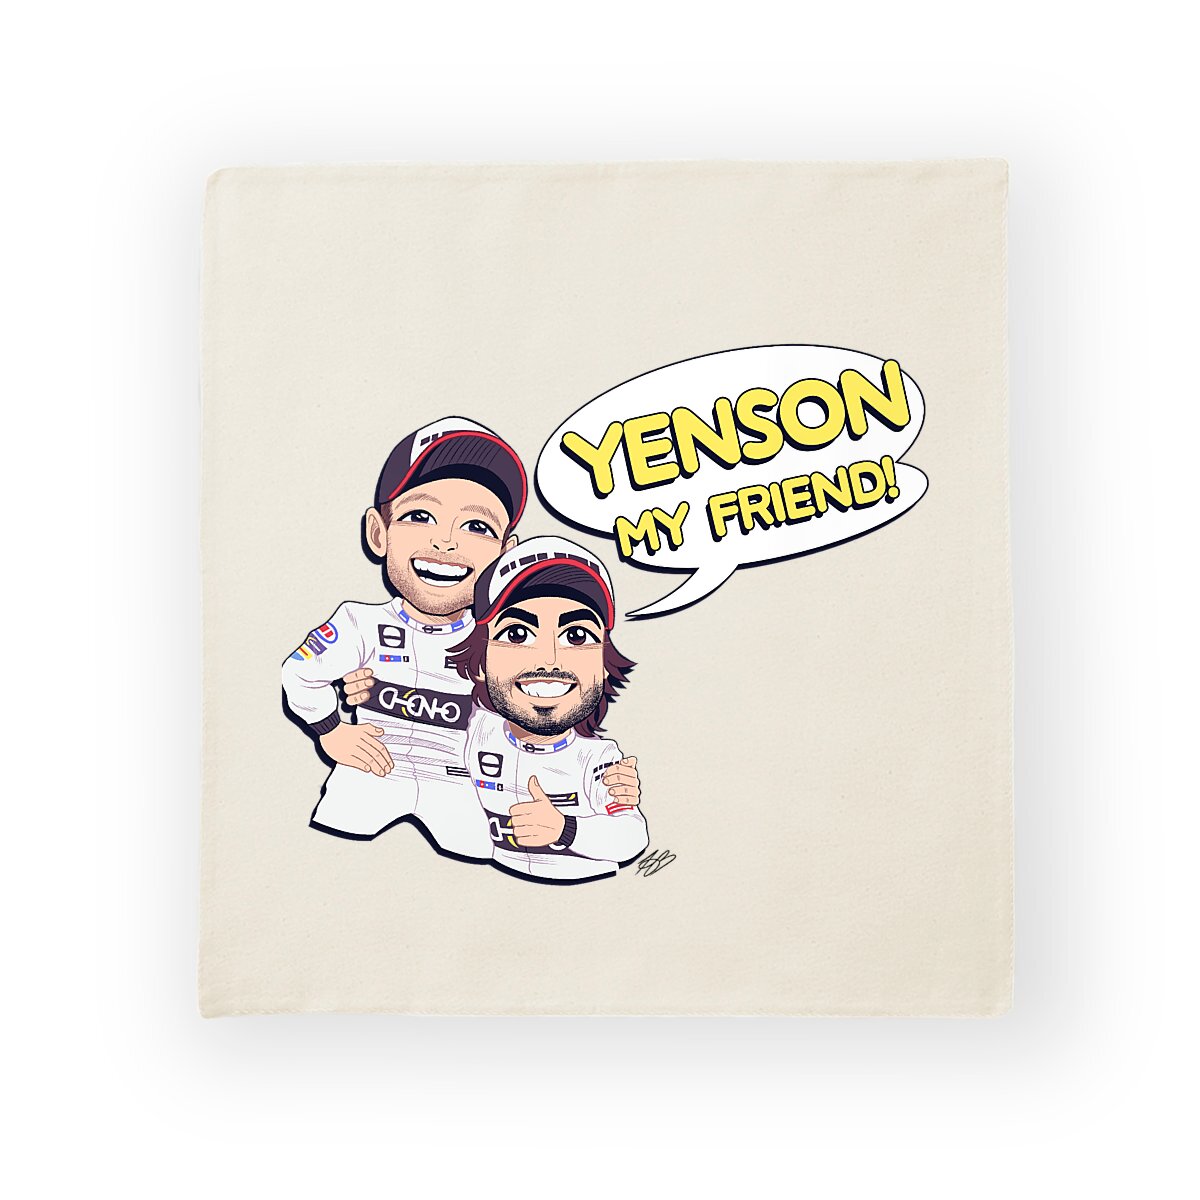 YENSON MY FRIEND - Cushion cover